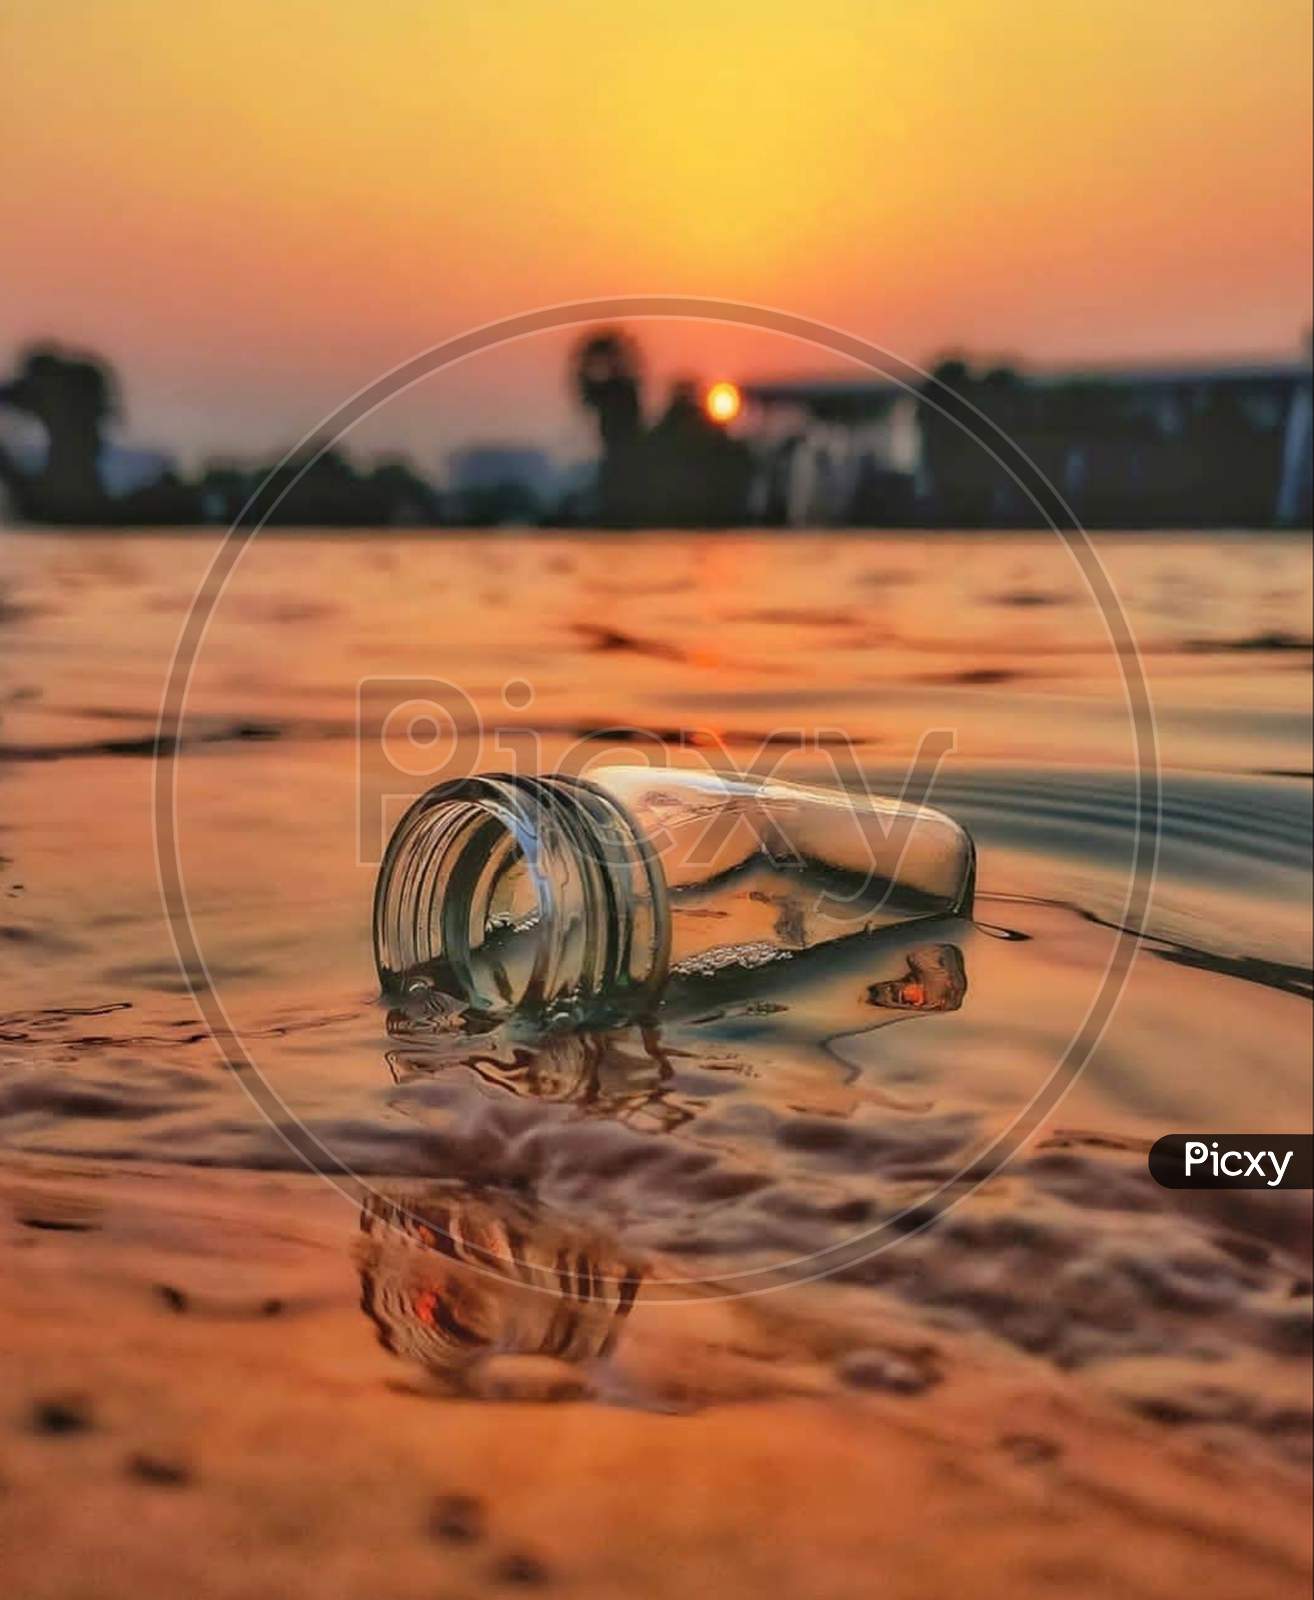 Close-up×Remove  Sunrise×Remove  Sunlight×Remove  Sand×Remove  Sky×Remove  Photography×Remove  Stock photography×Remove  Fishing rod×Remove  Sunset×Remove  Landscape×Remove